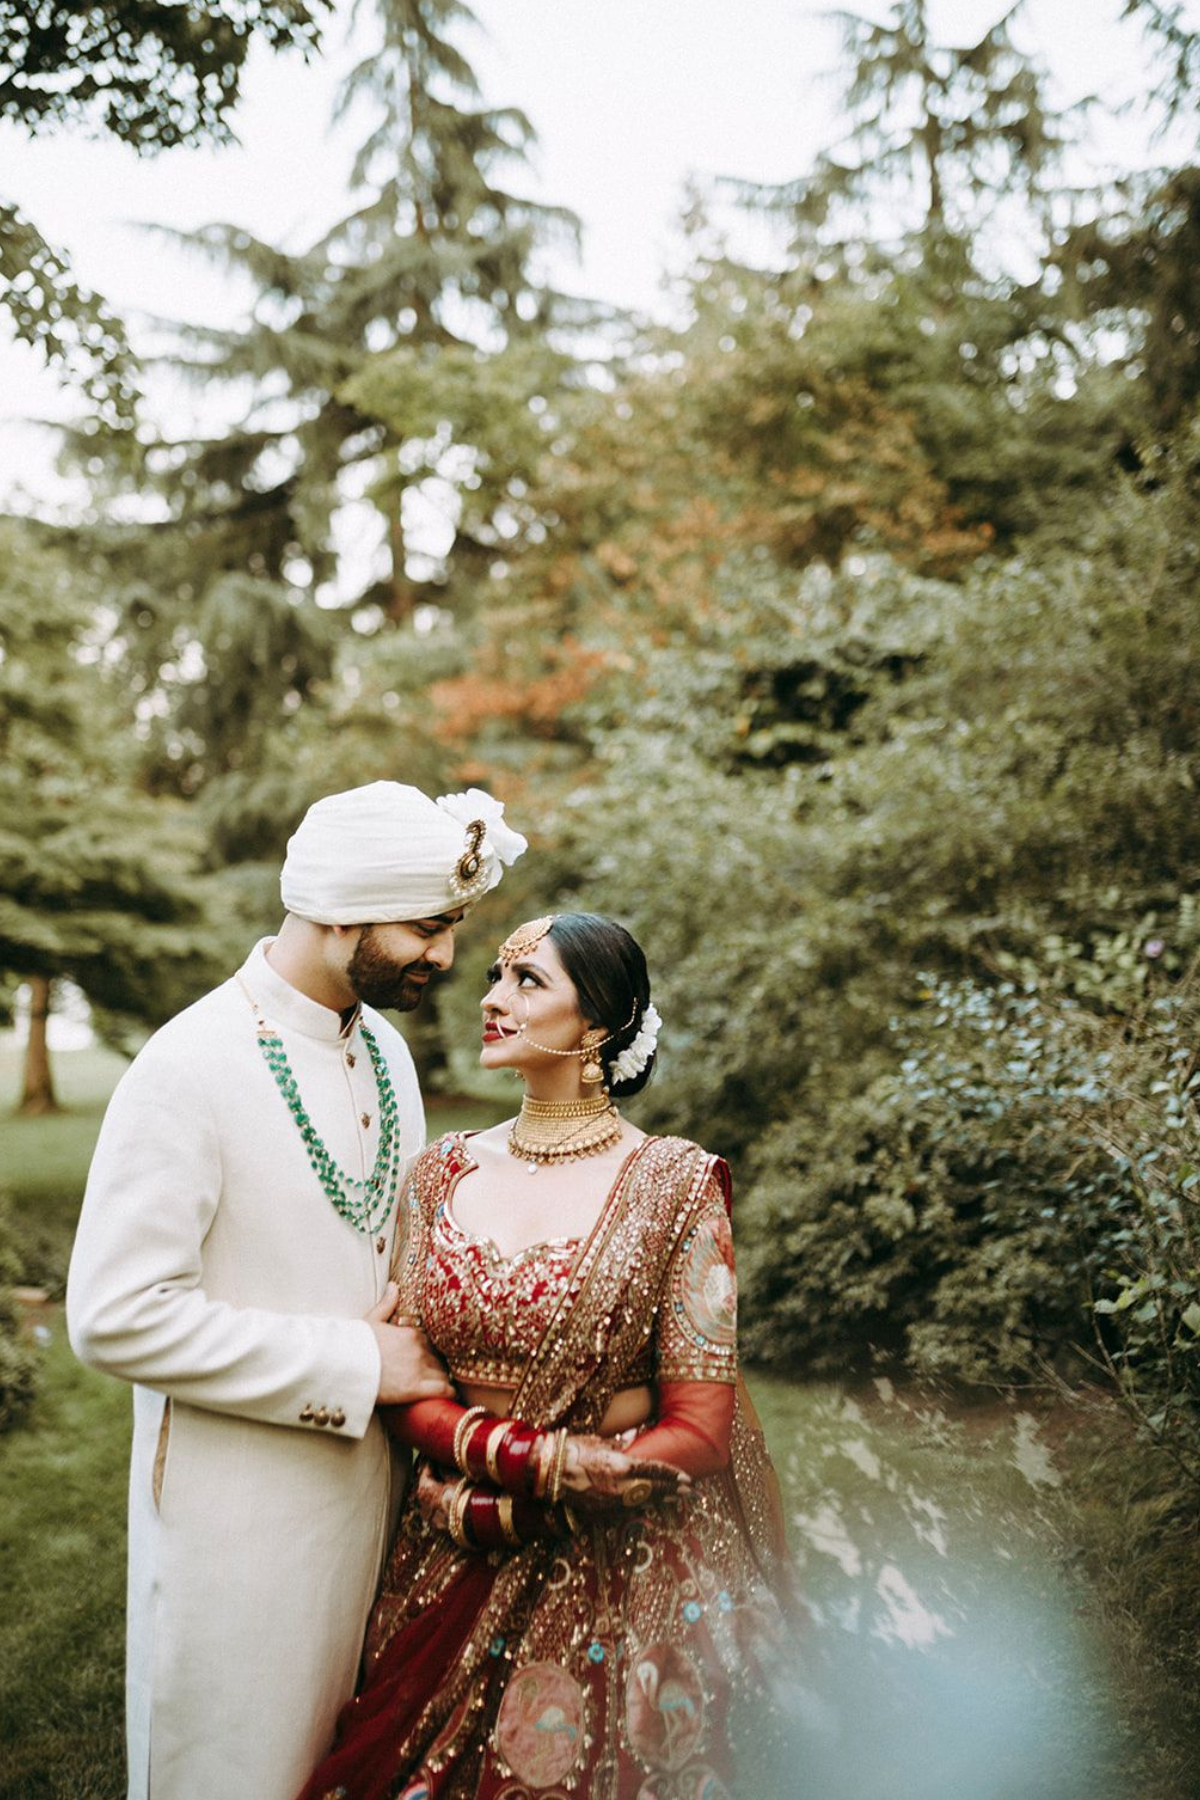 outdoor-garden-hindu-wedding-tent-greenery-bride-red-lehenga-groom